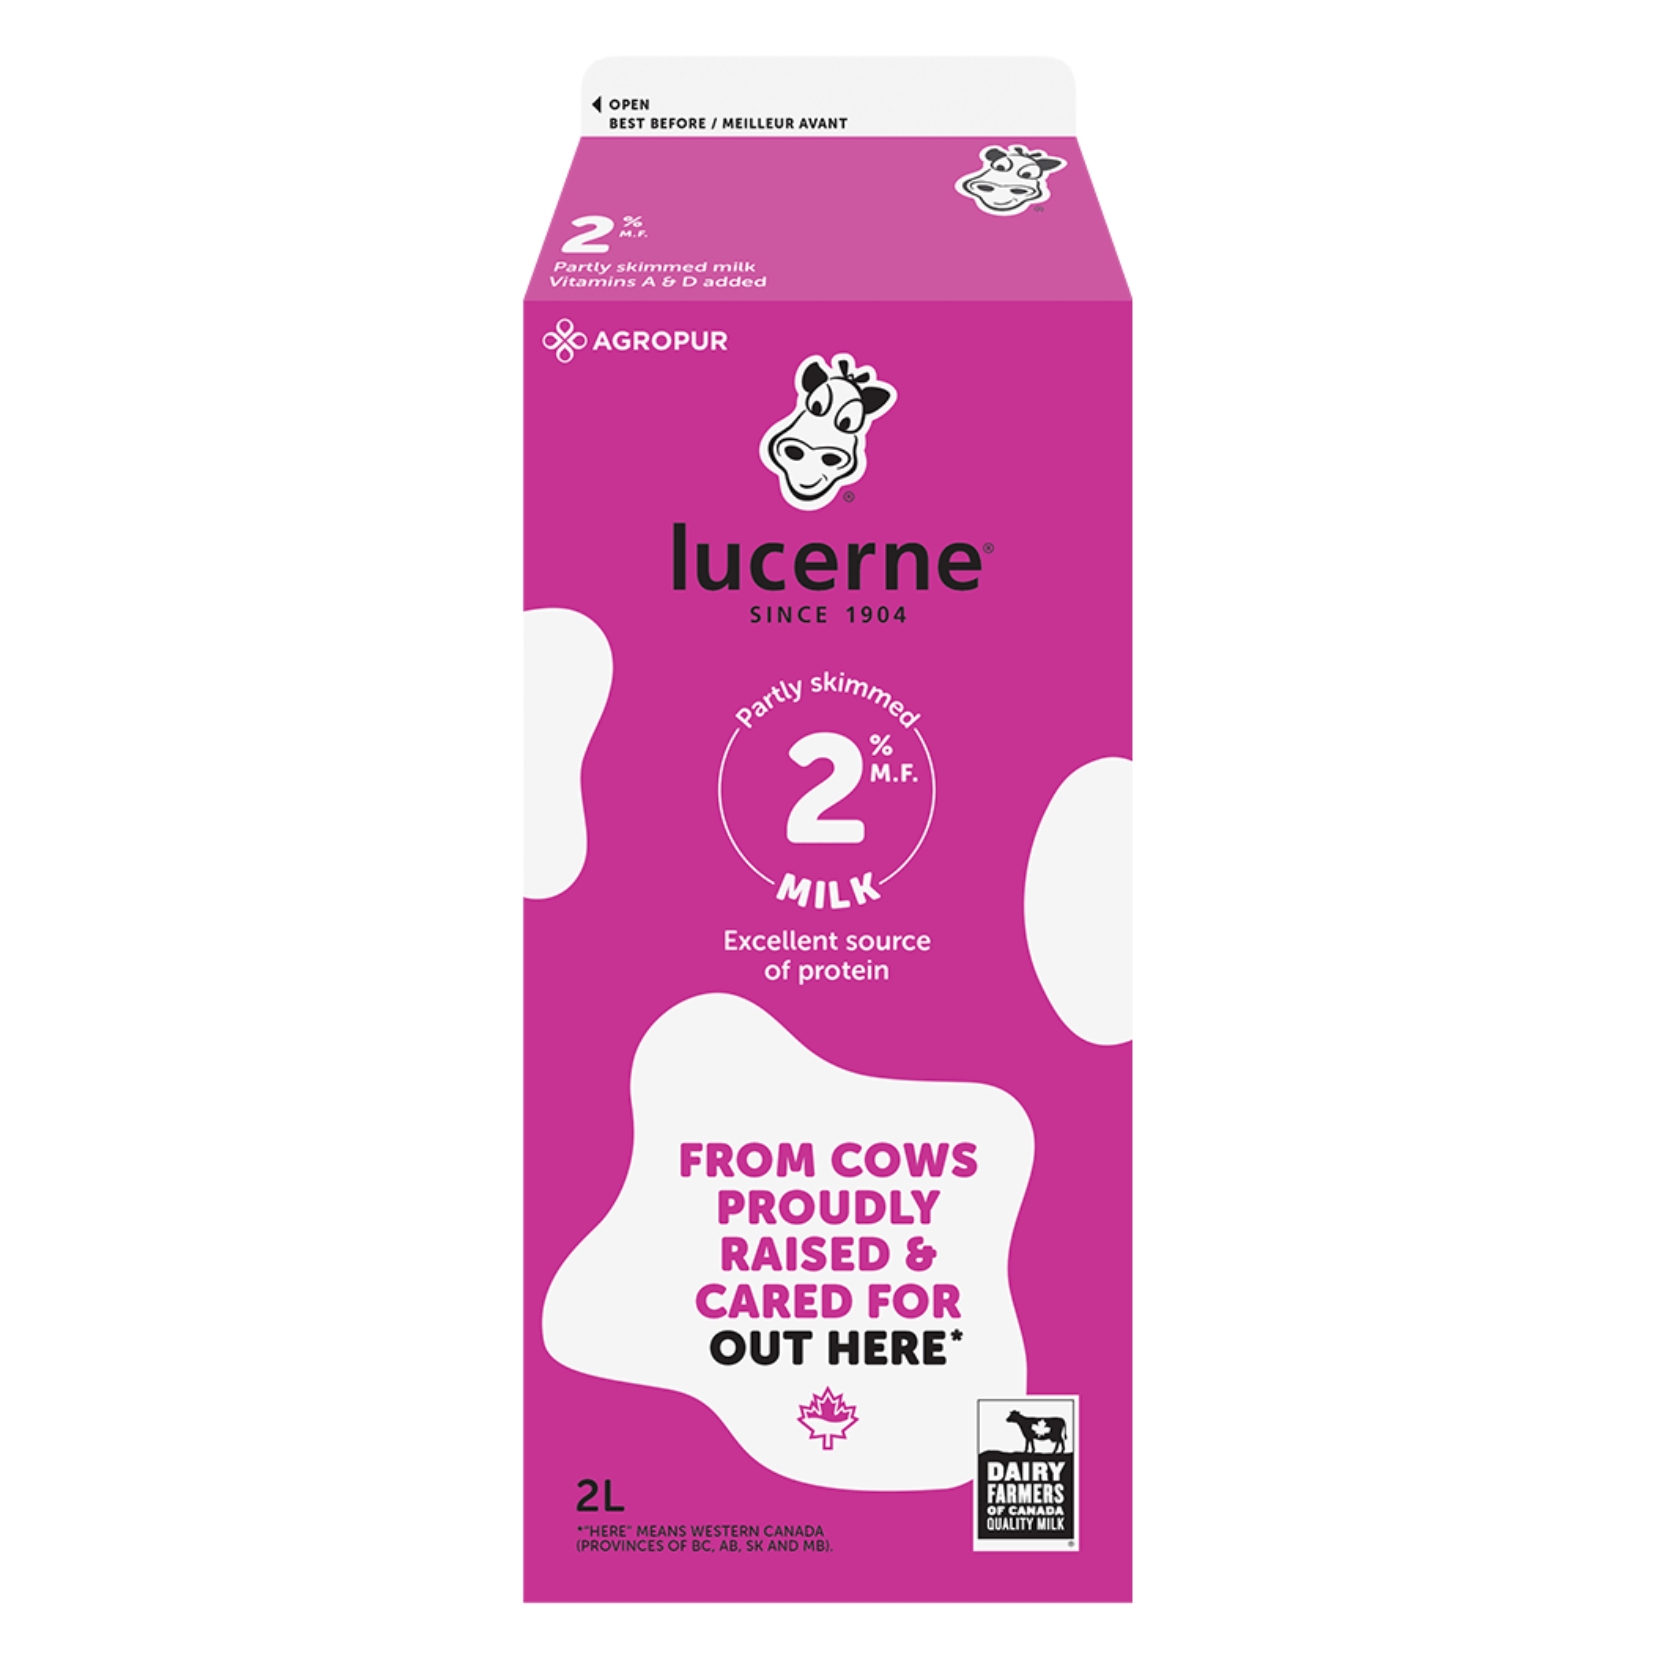 Lucerne Carton 2% Milk 2L